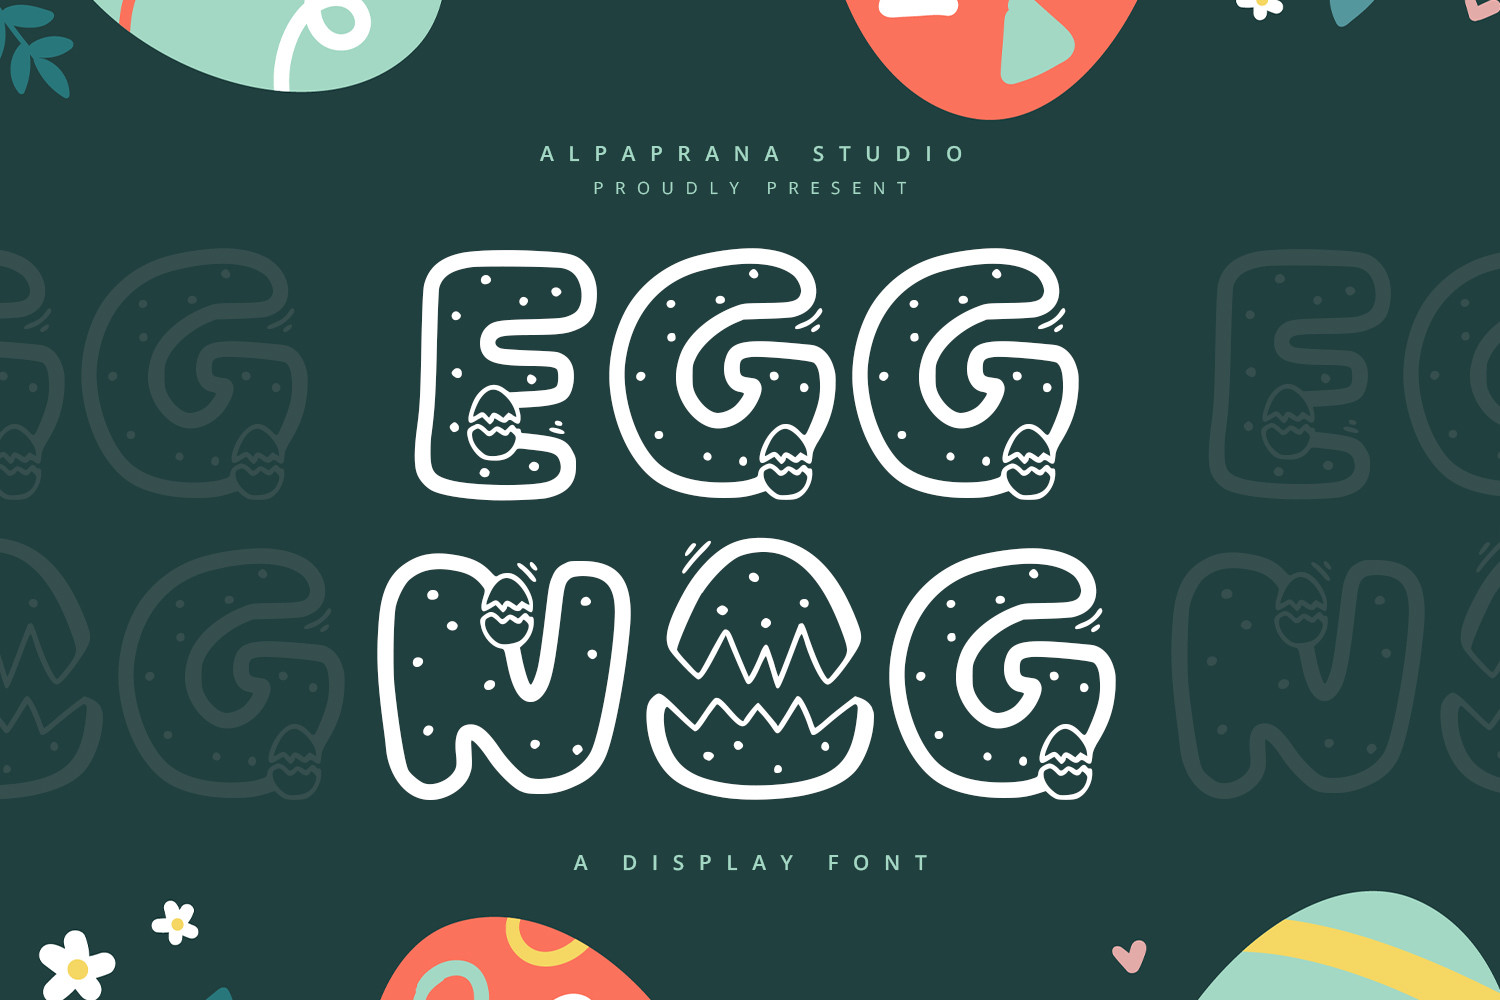 Eggnog